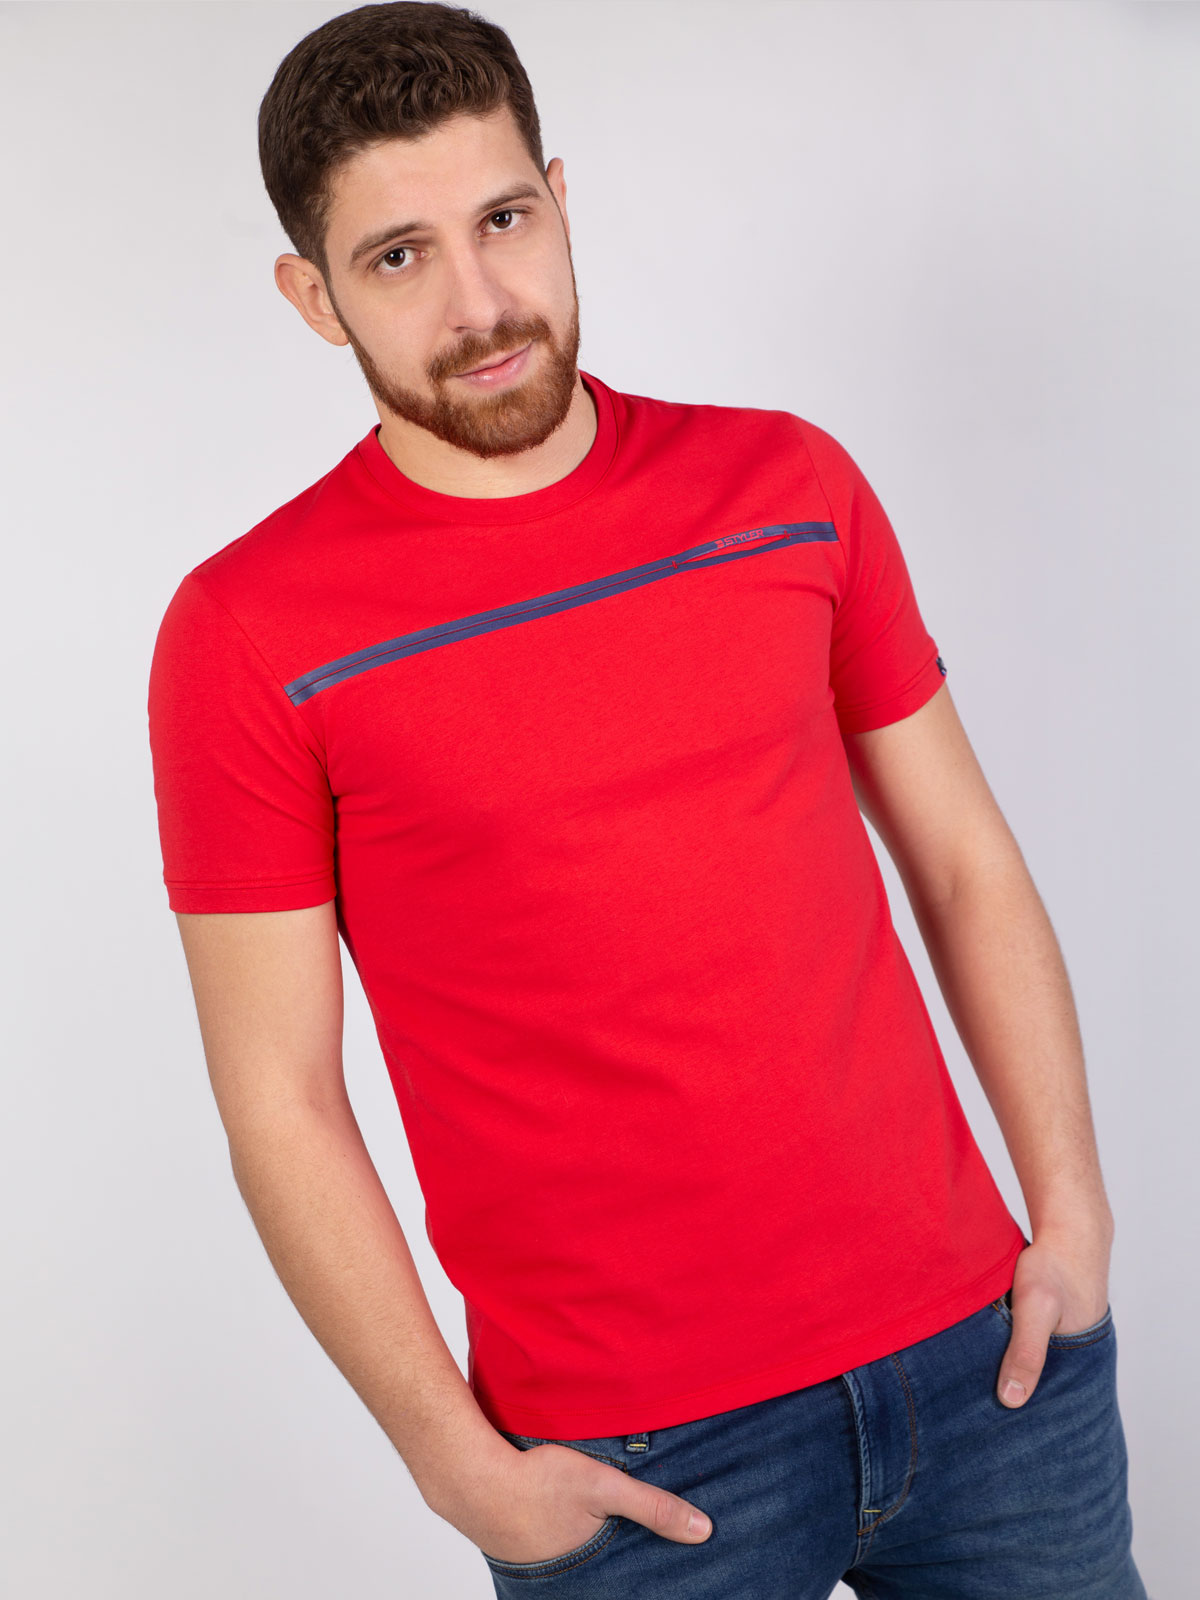 Κόκκινο μπλουζάκι με μπλε στάμπα - 96389 € 12.37 img3